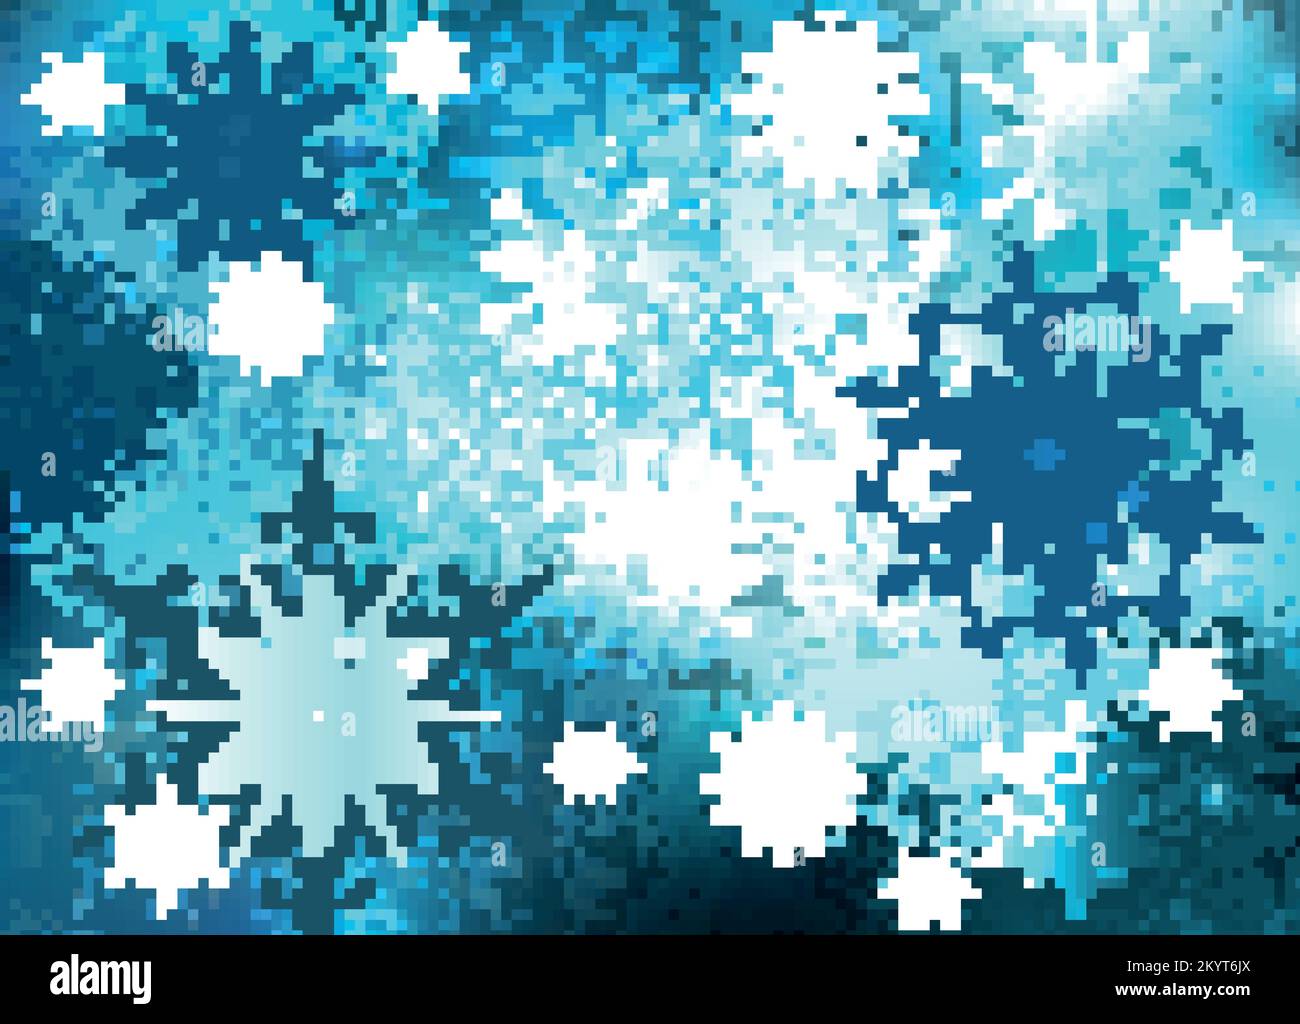 Kalter, glänzender, rauer, eisiger Hintergrund mit weiß-blau gemusterten Schneeflocken. Winterdesign. Stock Vektor